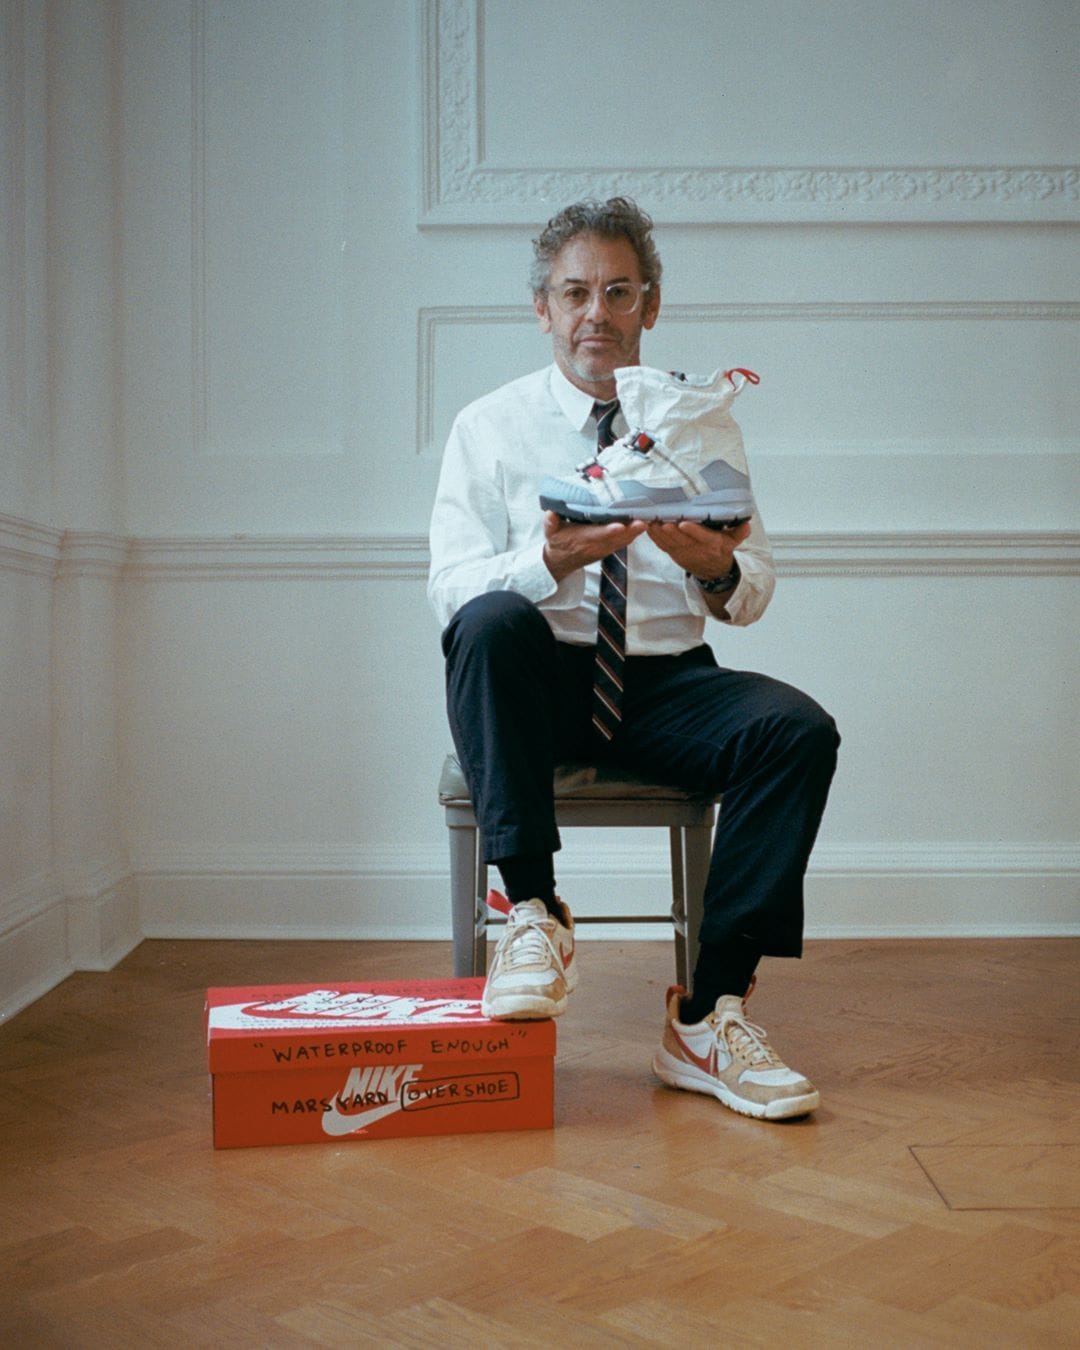 Photoshoot de l'artiste/ingénieur américain Tom Sachs dans le cadre de sa collaboration avec Nike